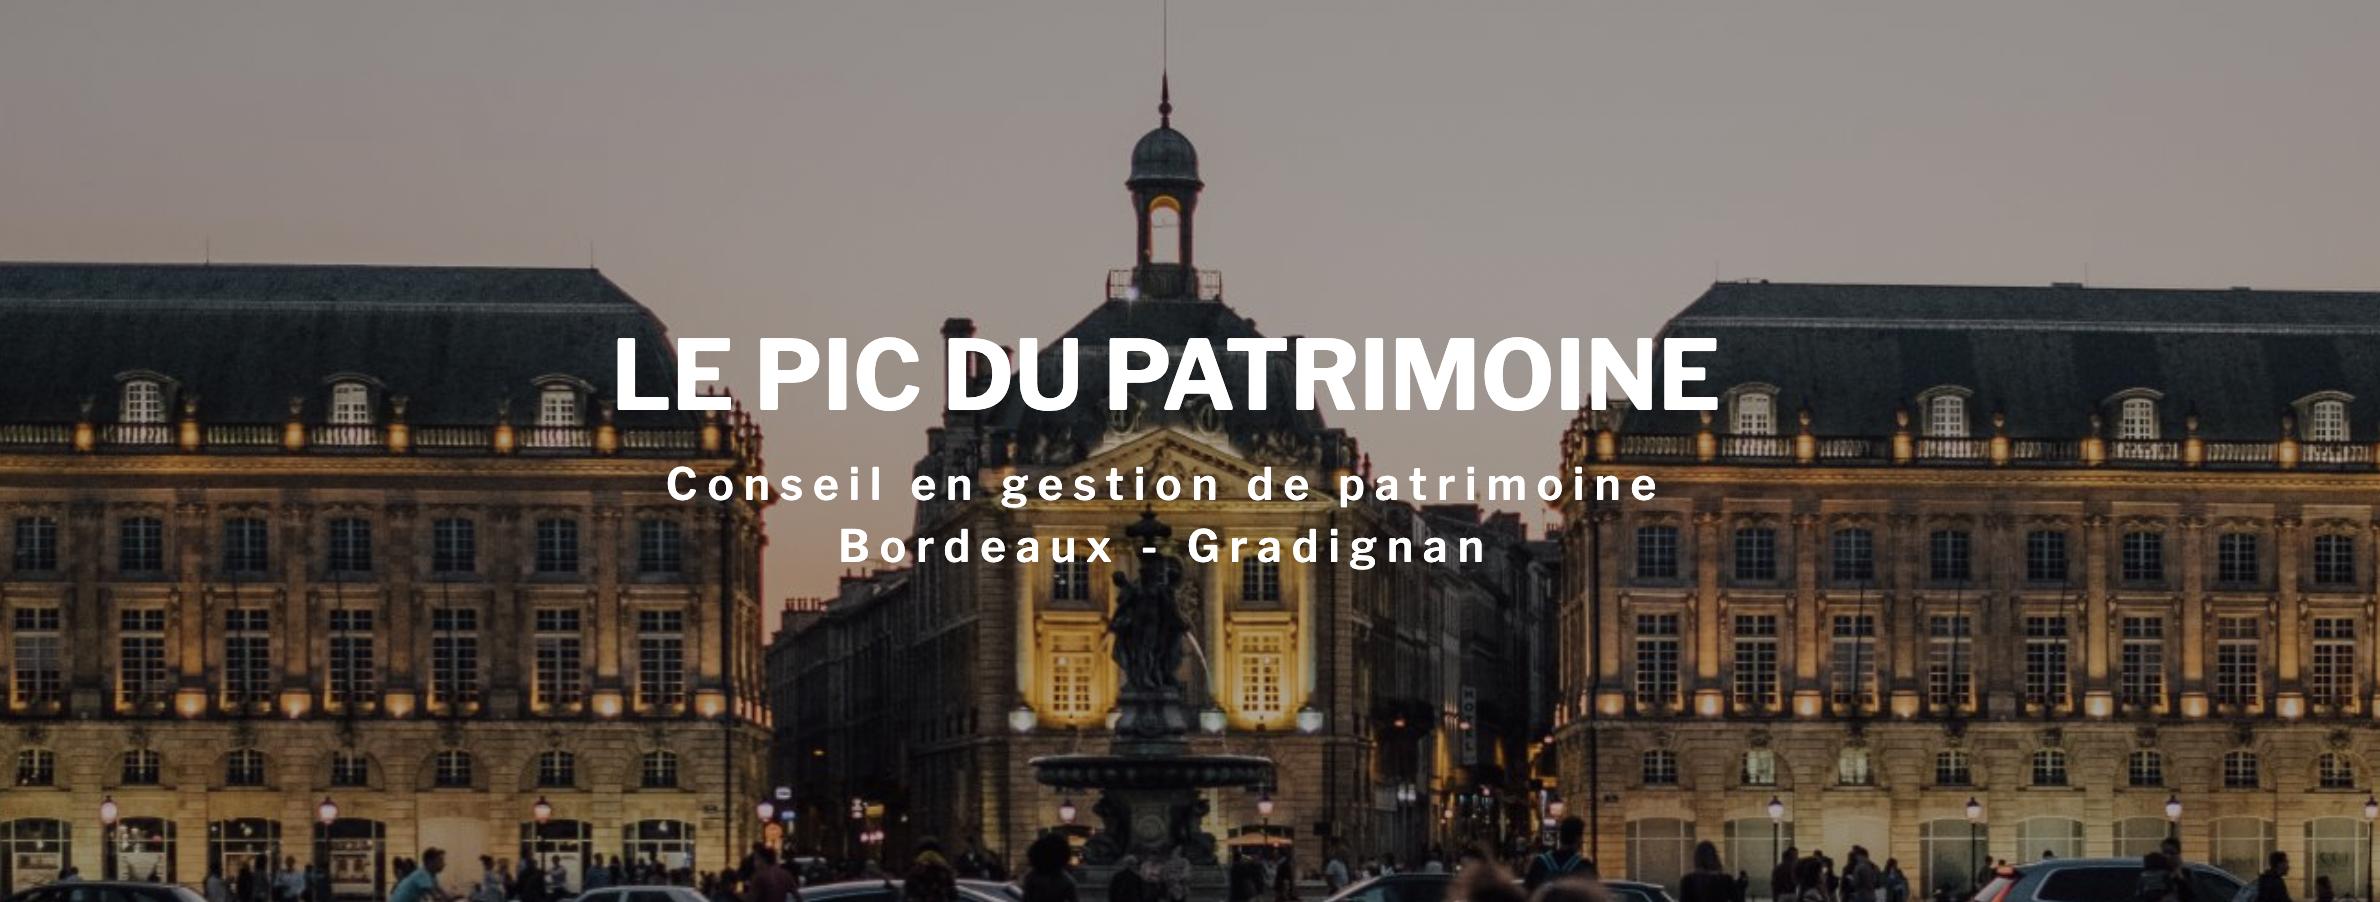 Conseiller En Gestion De Patrimoine - Bordeaux - Le Pic Du Patrimoine Gradignan